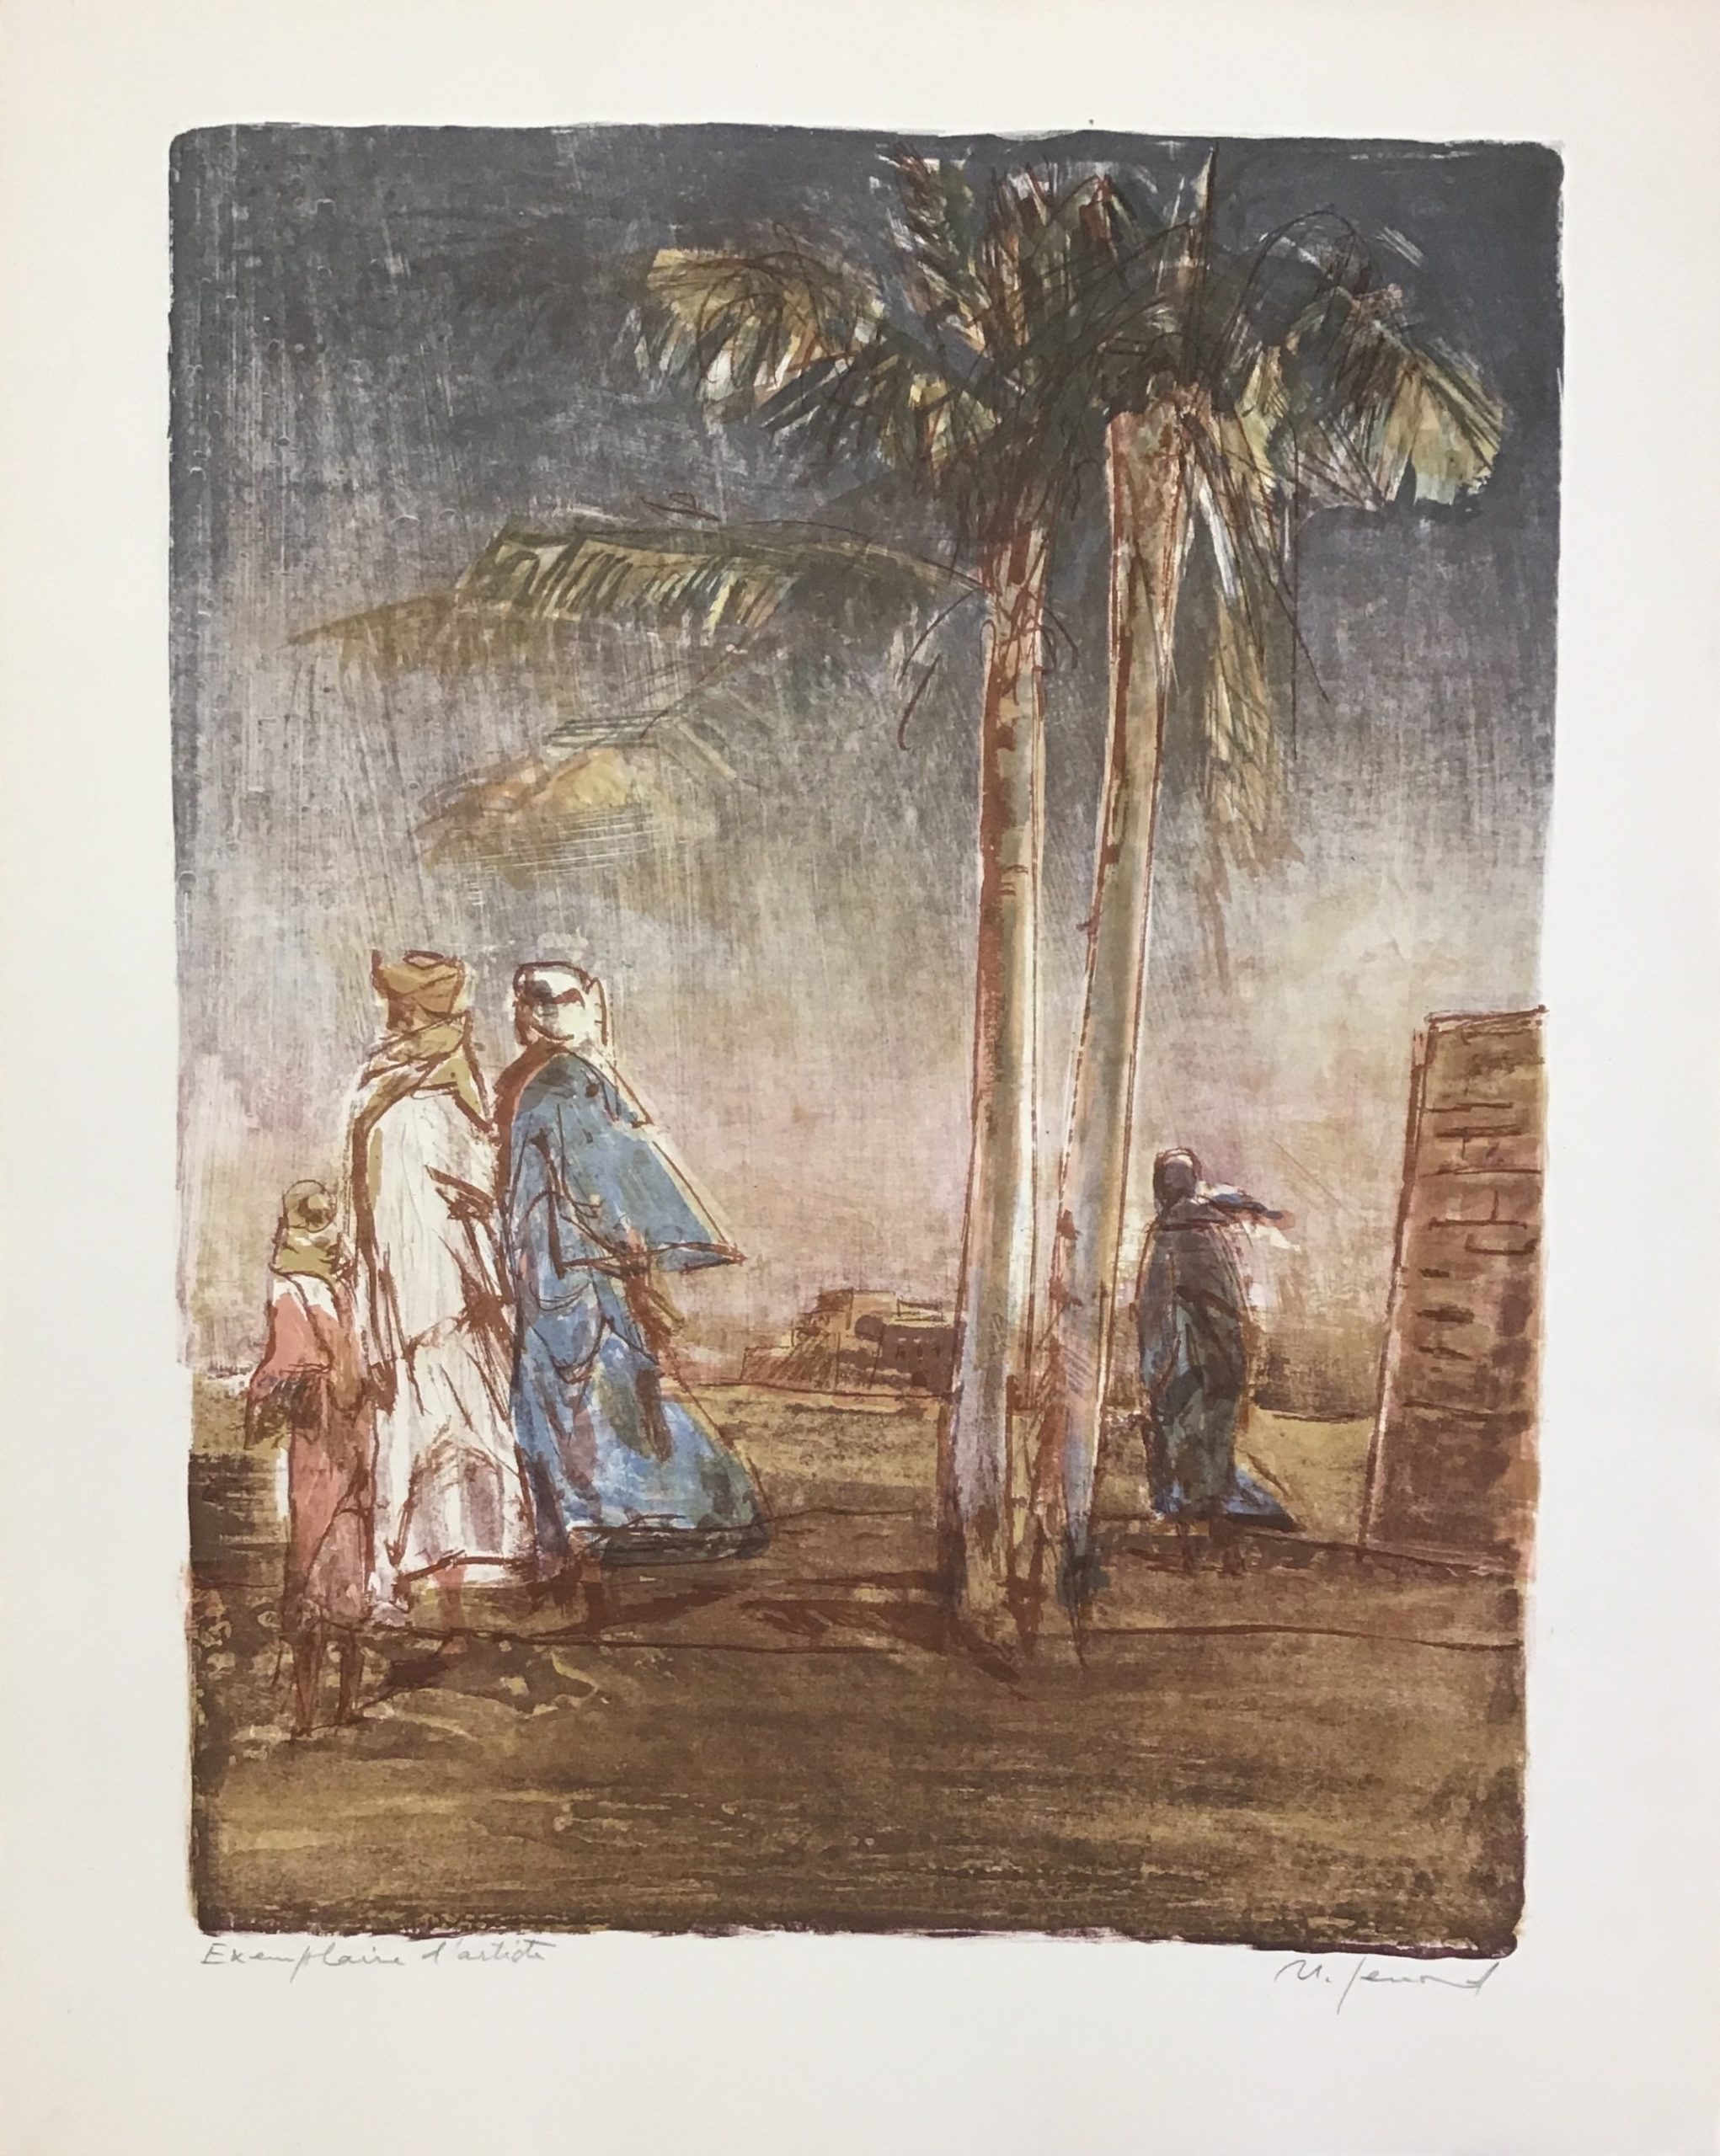 Khamsin – Hommes et palmiers (version « jour ») Années 1960 – Lithographie, 56x45 cm